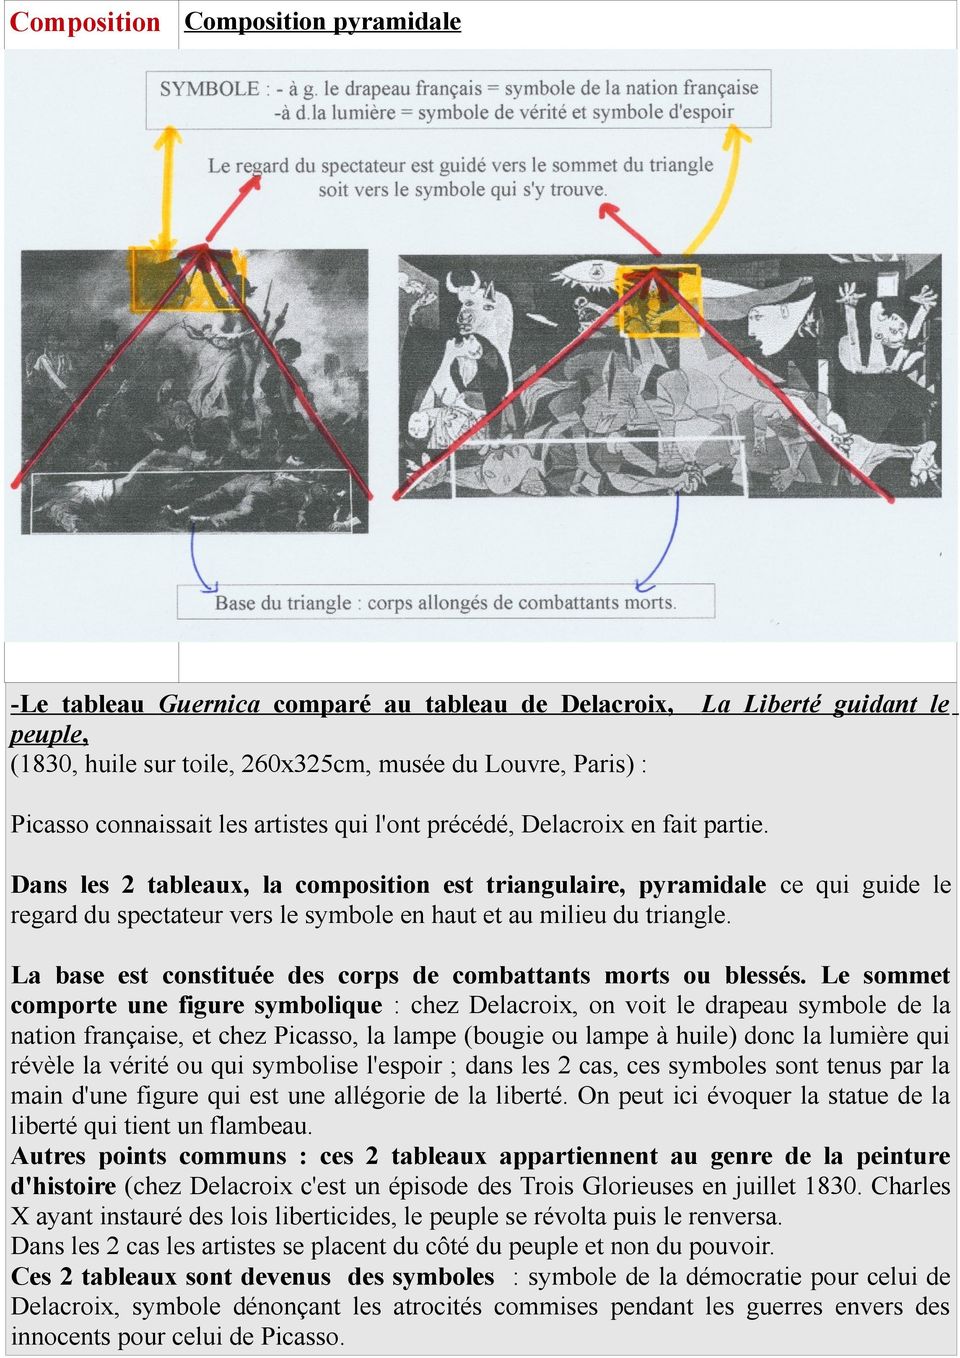 Dans les 2 tableaux, la composition est triangulaire, pyramidale ce qui guide le regard du spectateur vers le symbole en haut et au milieu du triangle.